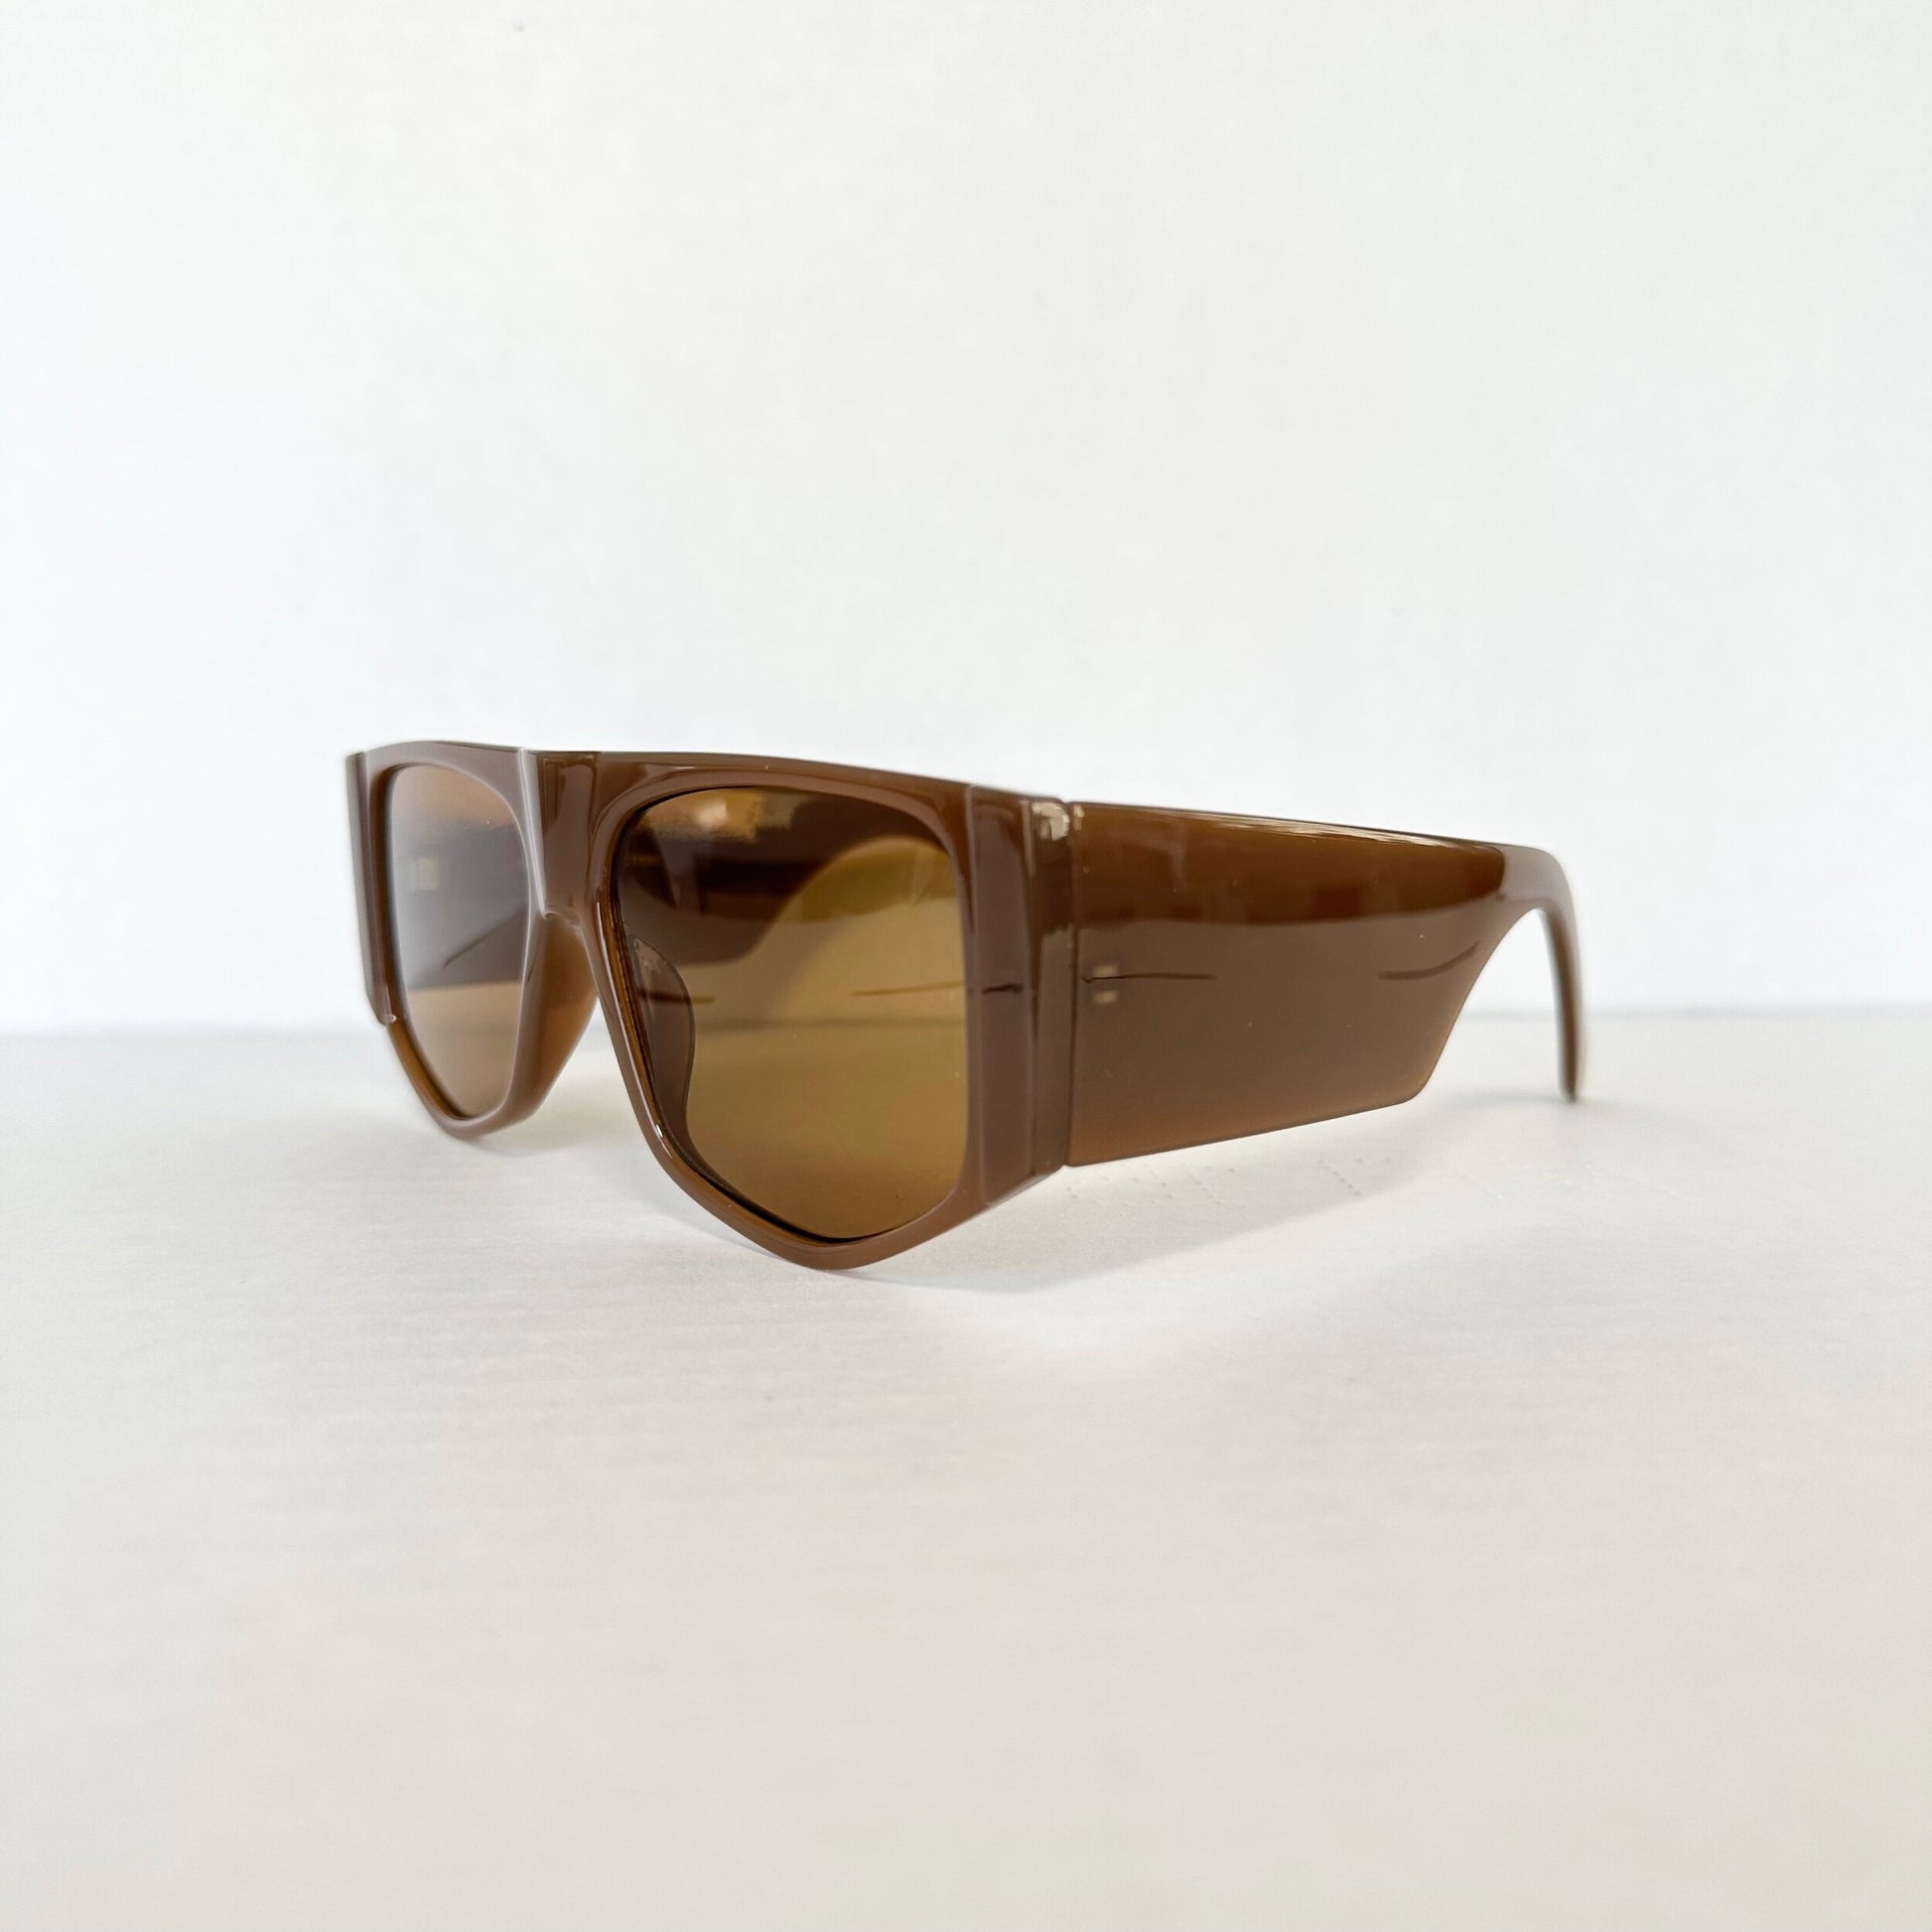 Sonoran Shield Sunglasses